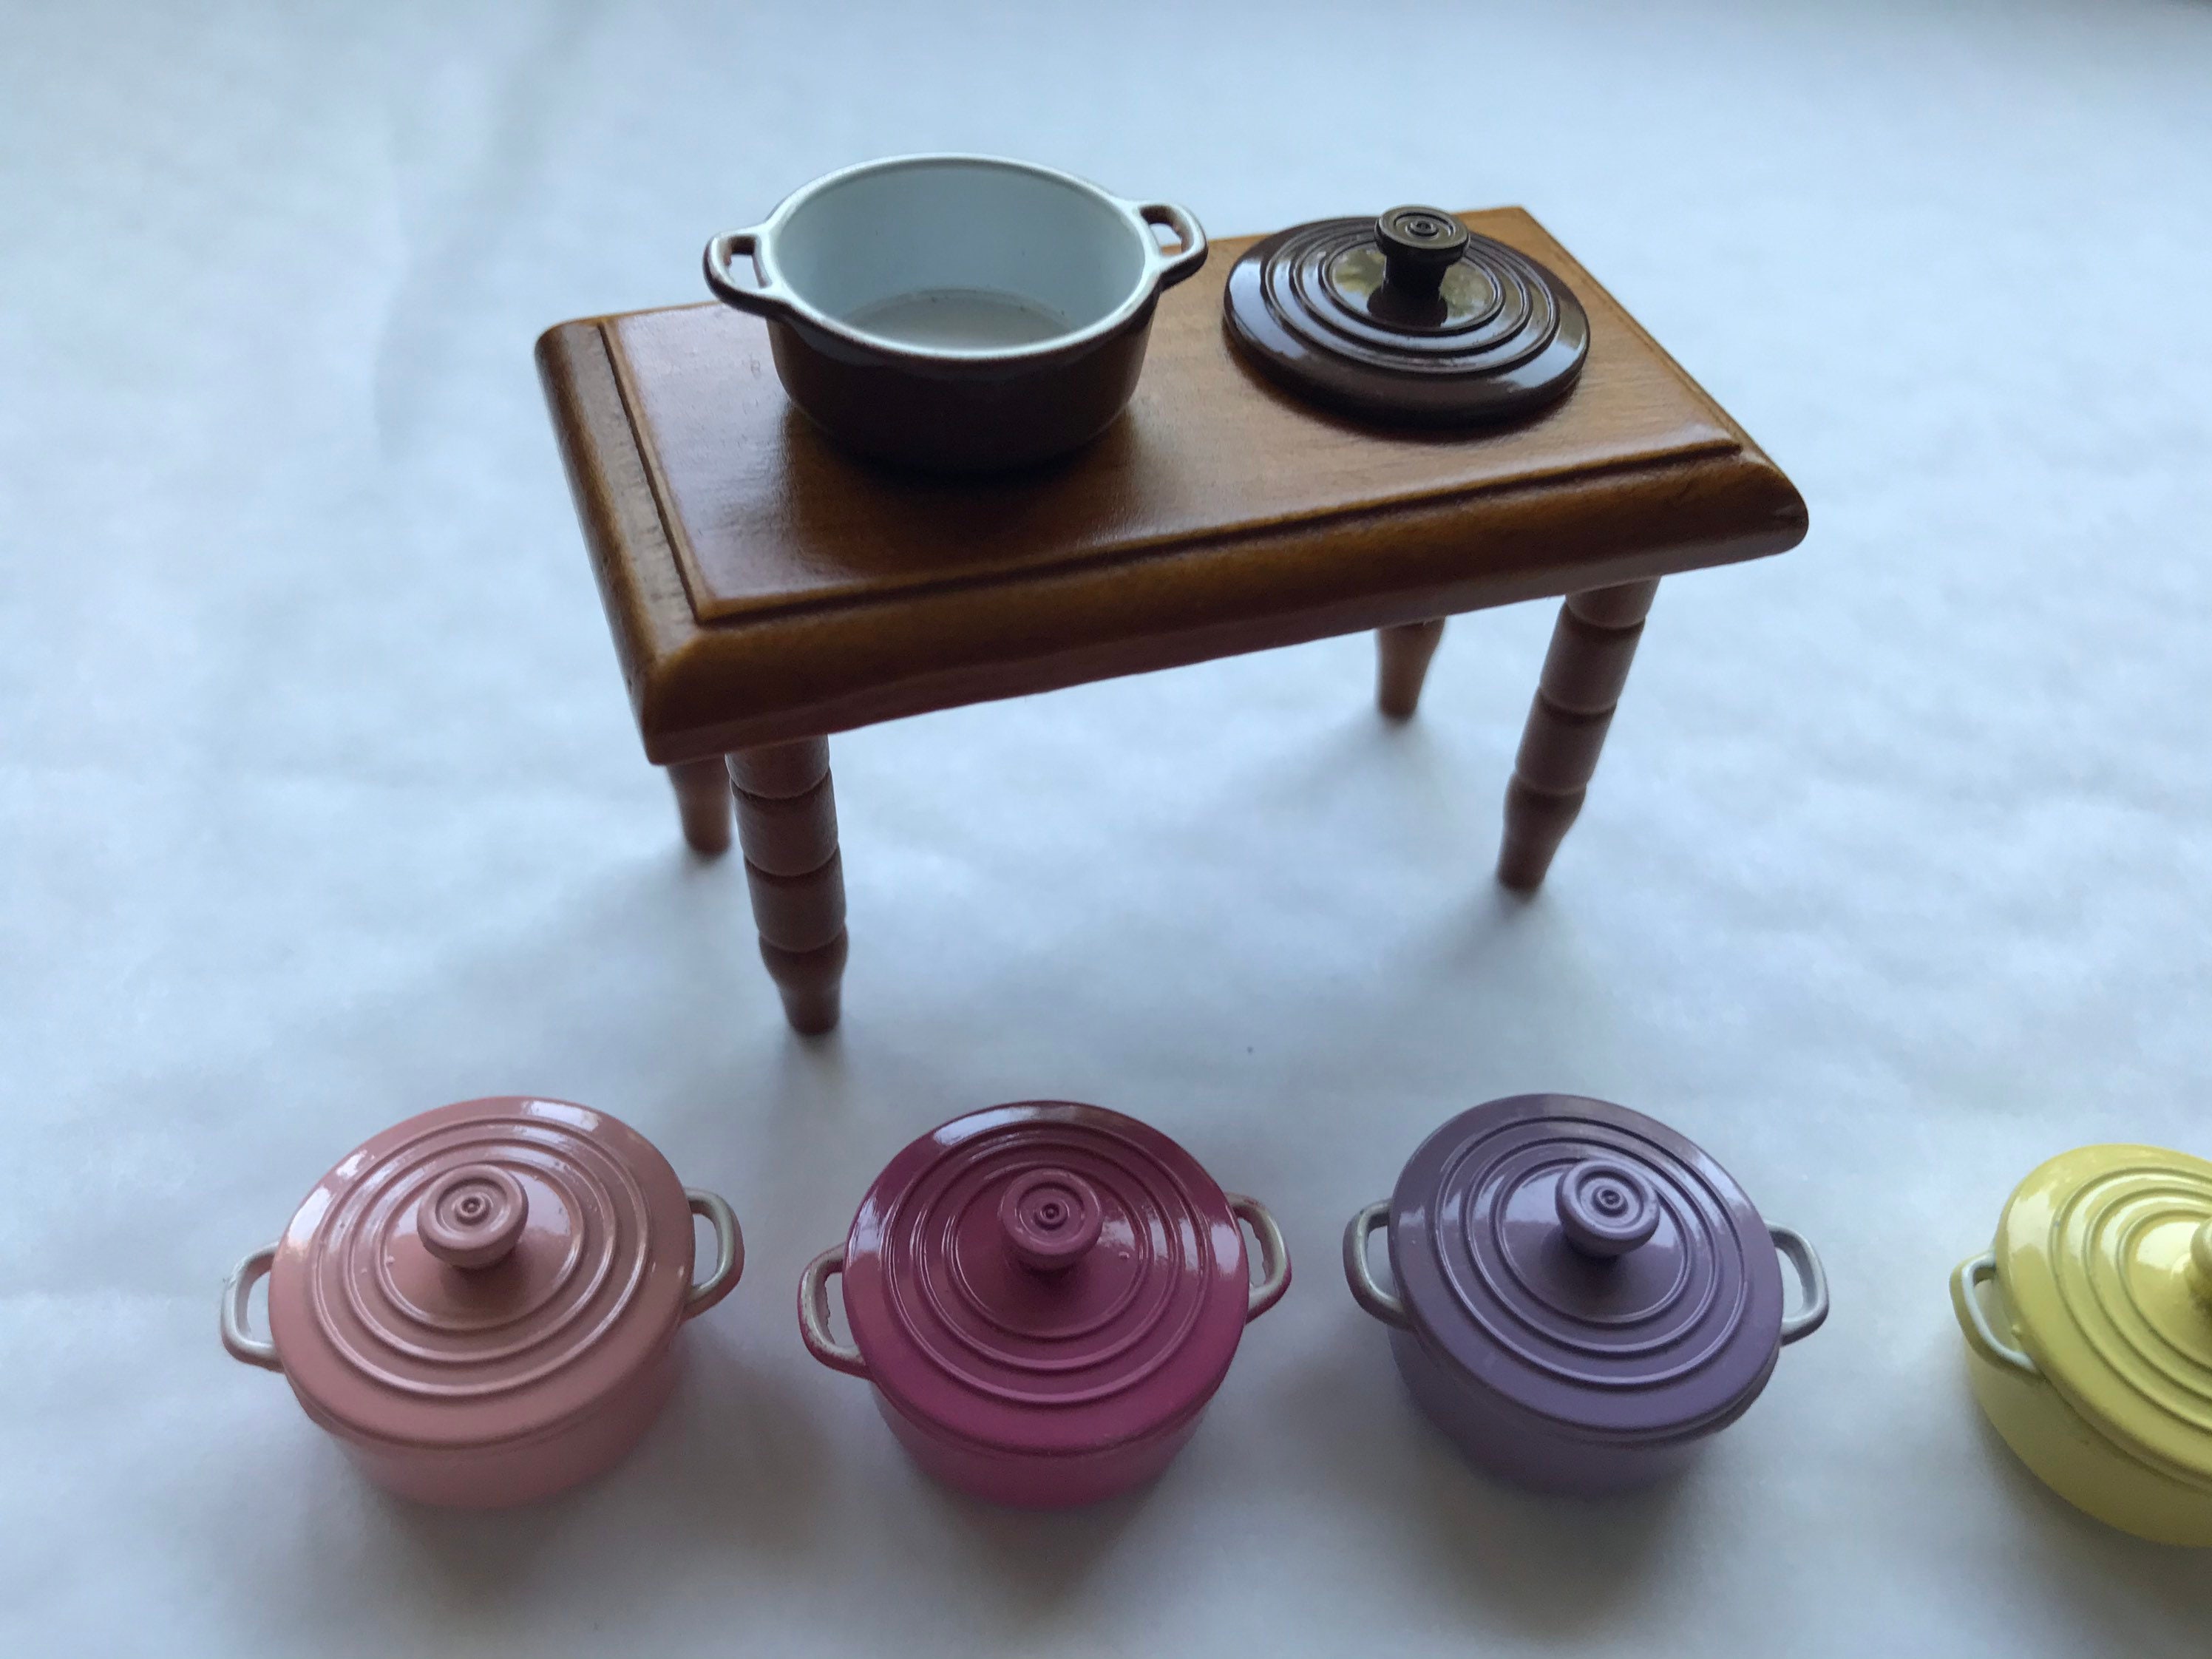 9 Piece Set of Vintage Miniature Cast Iron Pots, Scuttle Bucket, Pans,  Ceramic Pitcher & Bowl, Decorative Kitchen Shelf With Accessories 